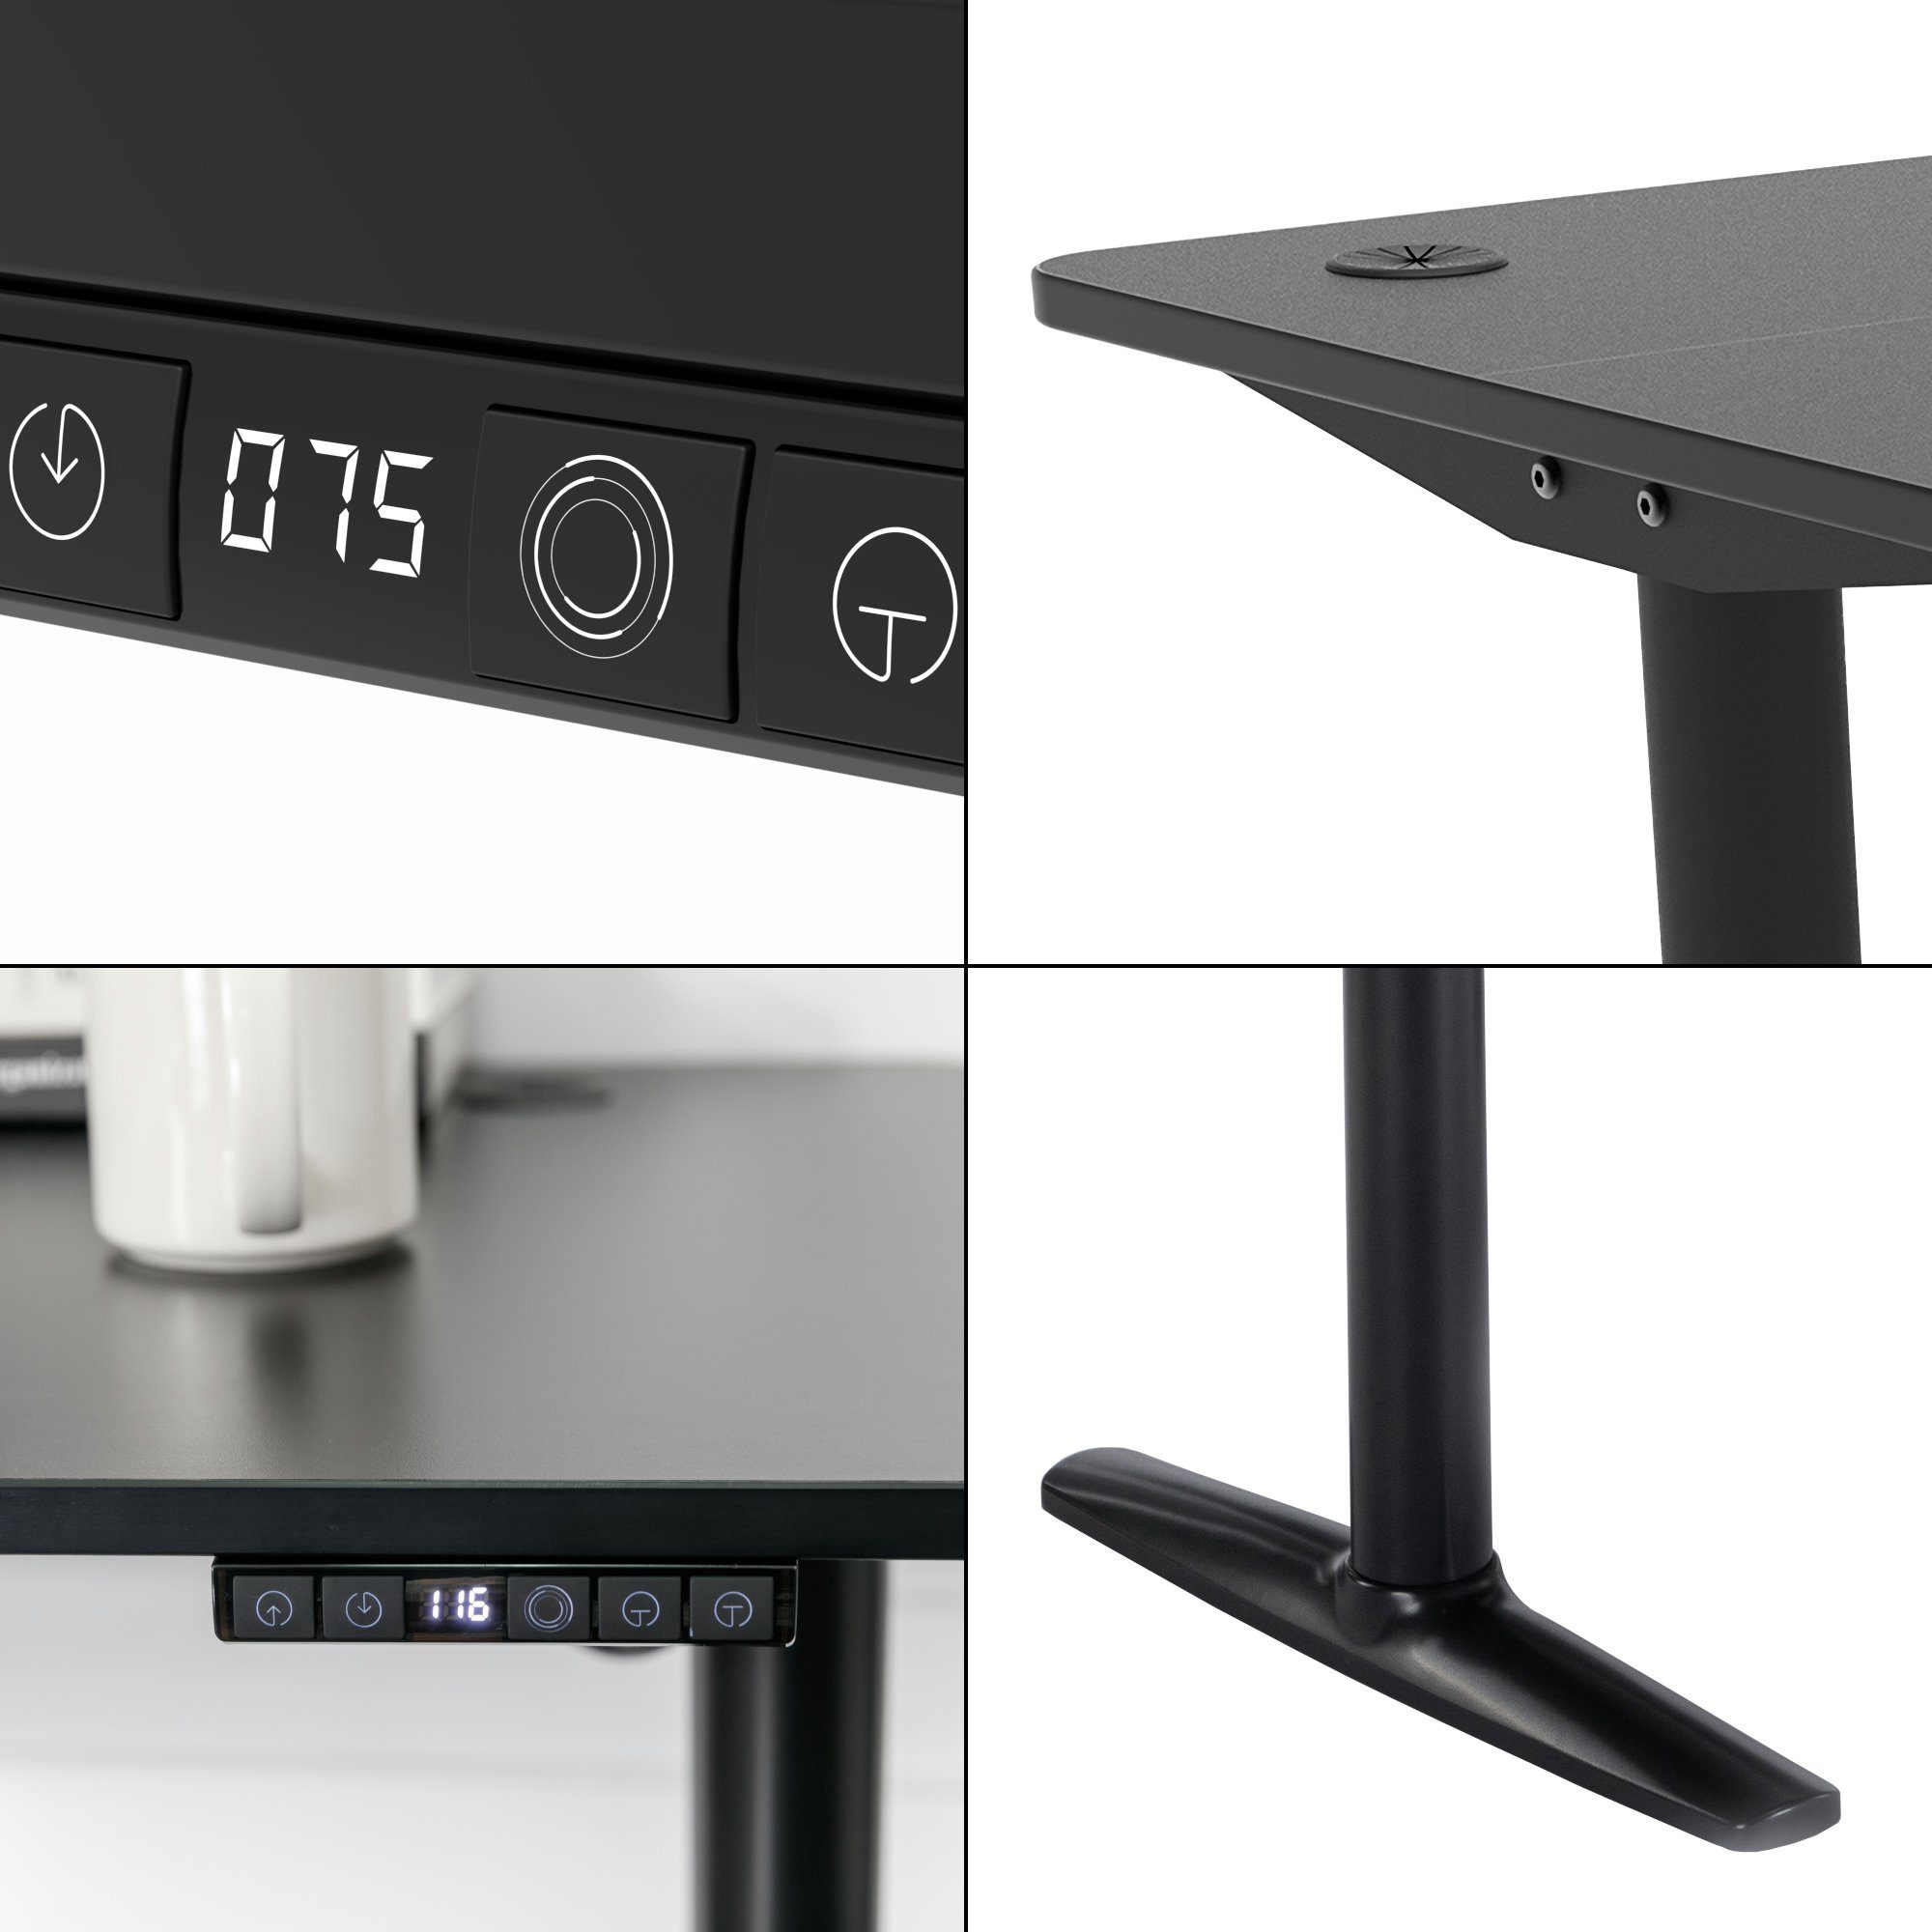 Schwarz Höhenverstellbarer »Arogno« 120 Schreibtisch, x pro.tec cm 60 Tisch